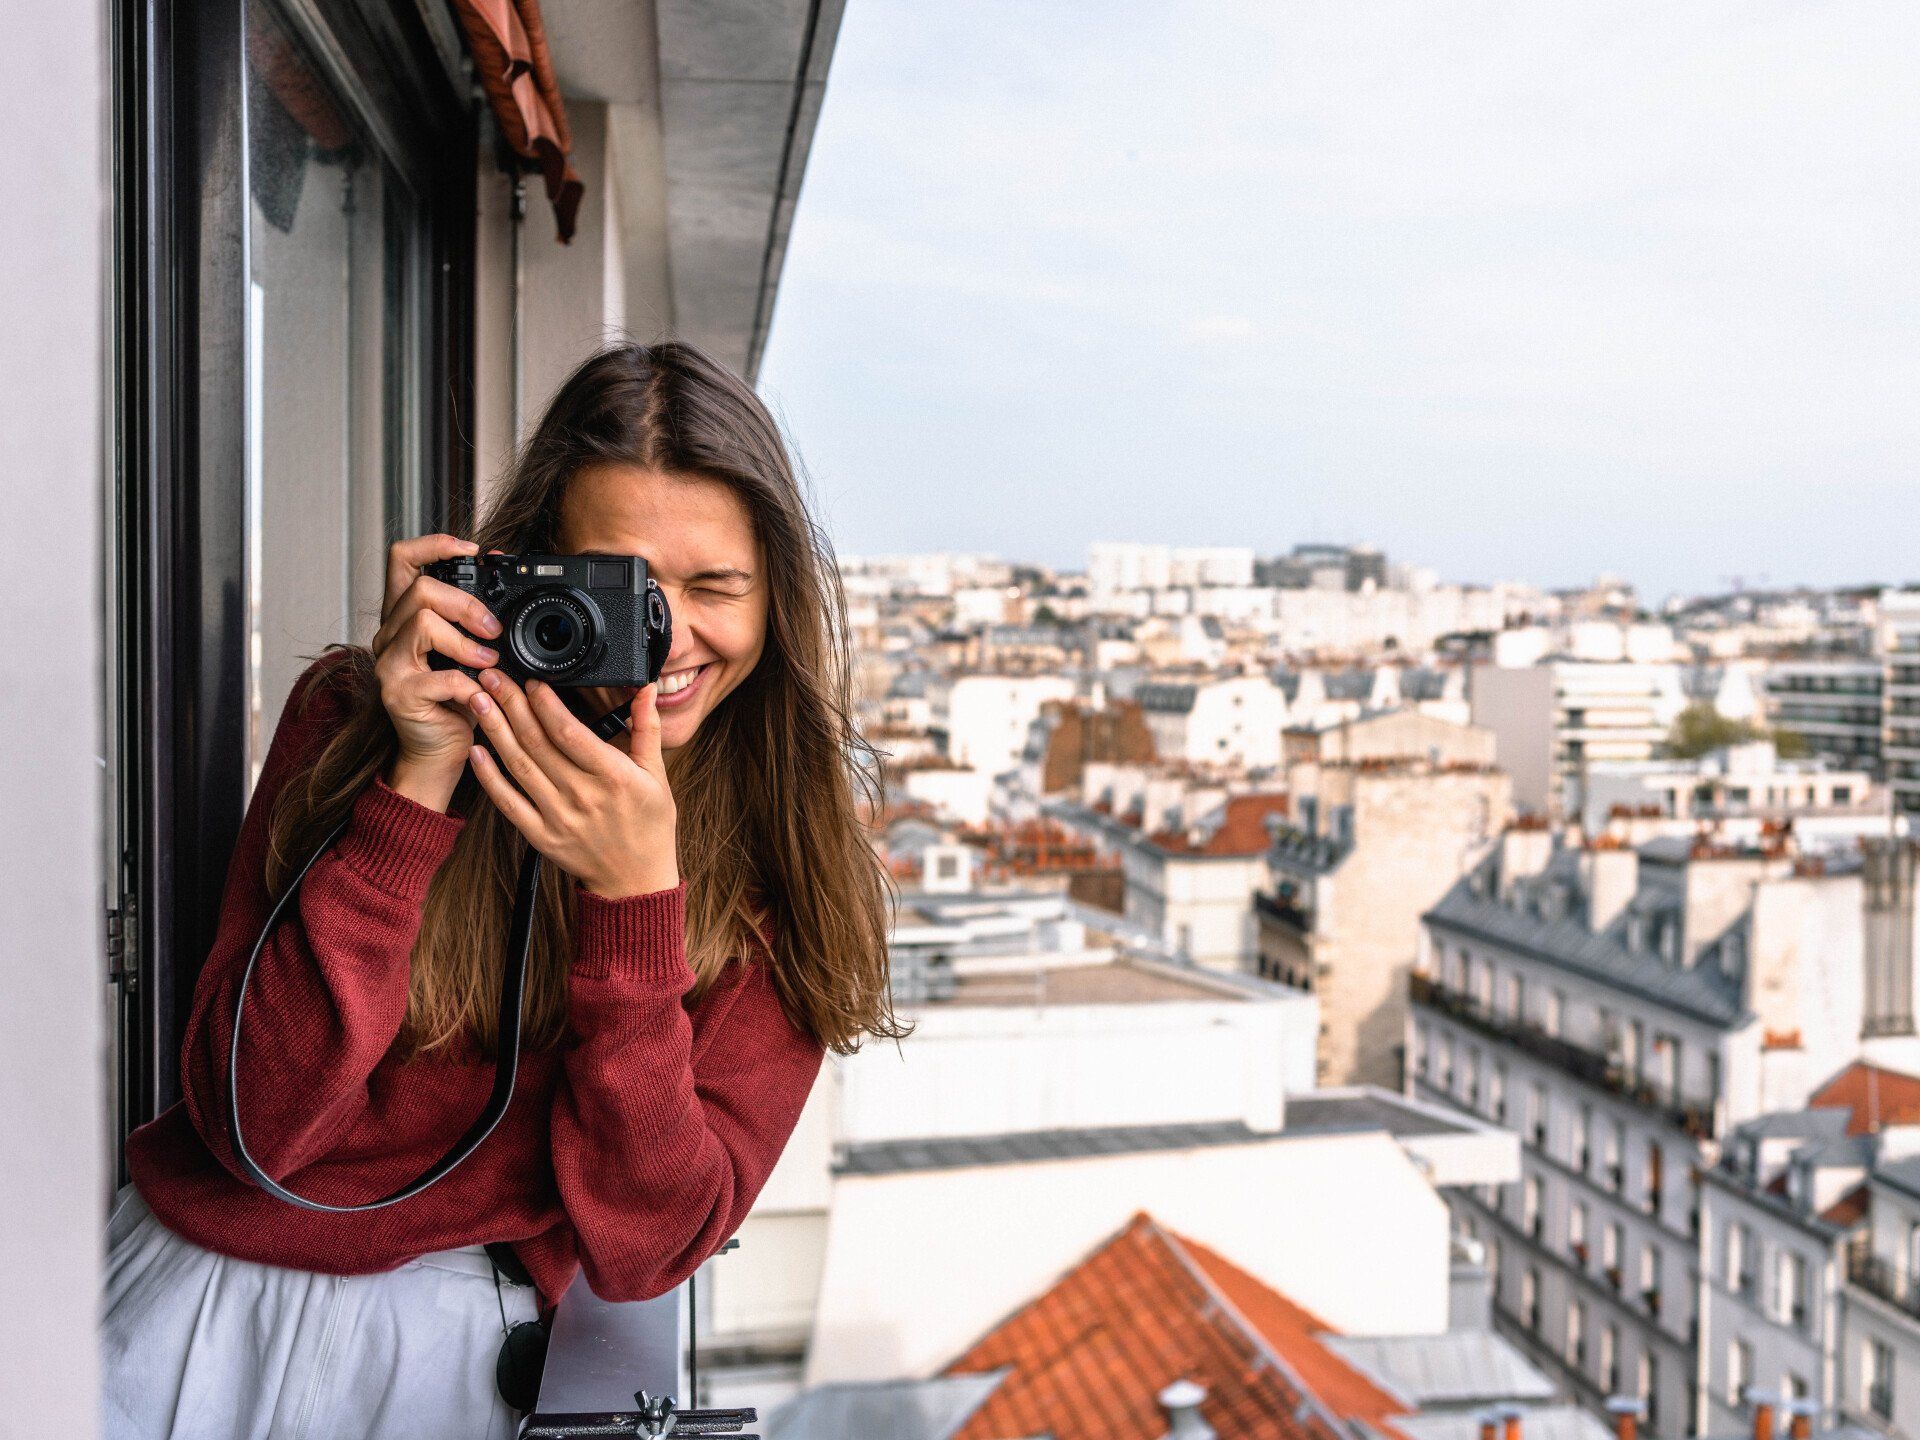 Una mujer está tomando una fotografía de una ciudad con una cámara.